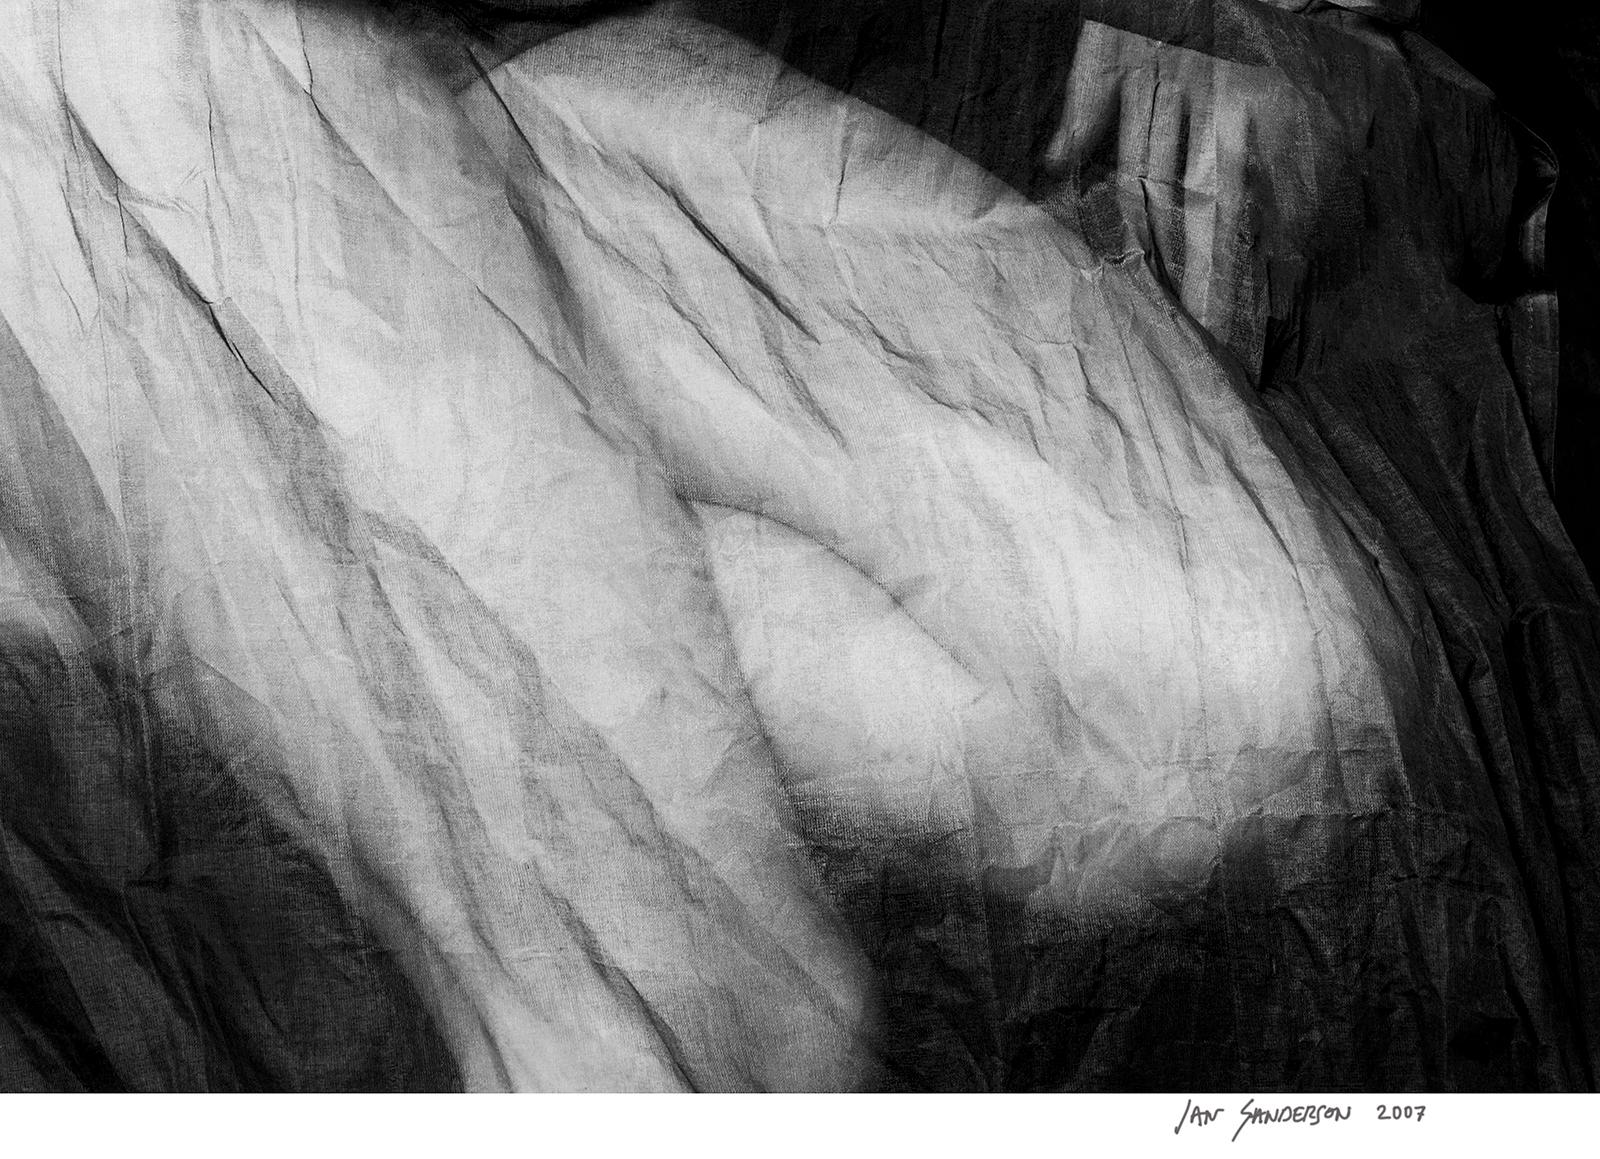 Galerie d'art en édition limitée signée Charlotte, photo en noir et blanc à grande échelle - Contemporain Photograph par Ian Sanderson